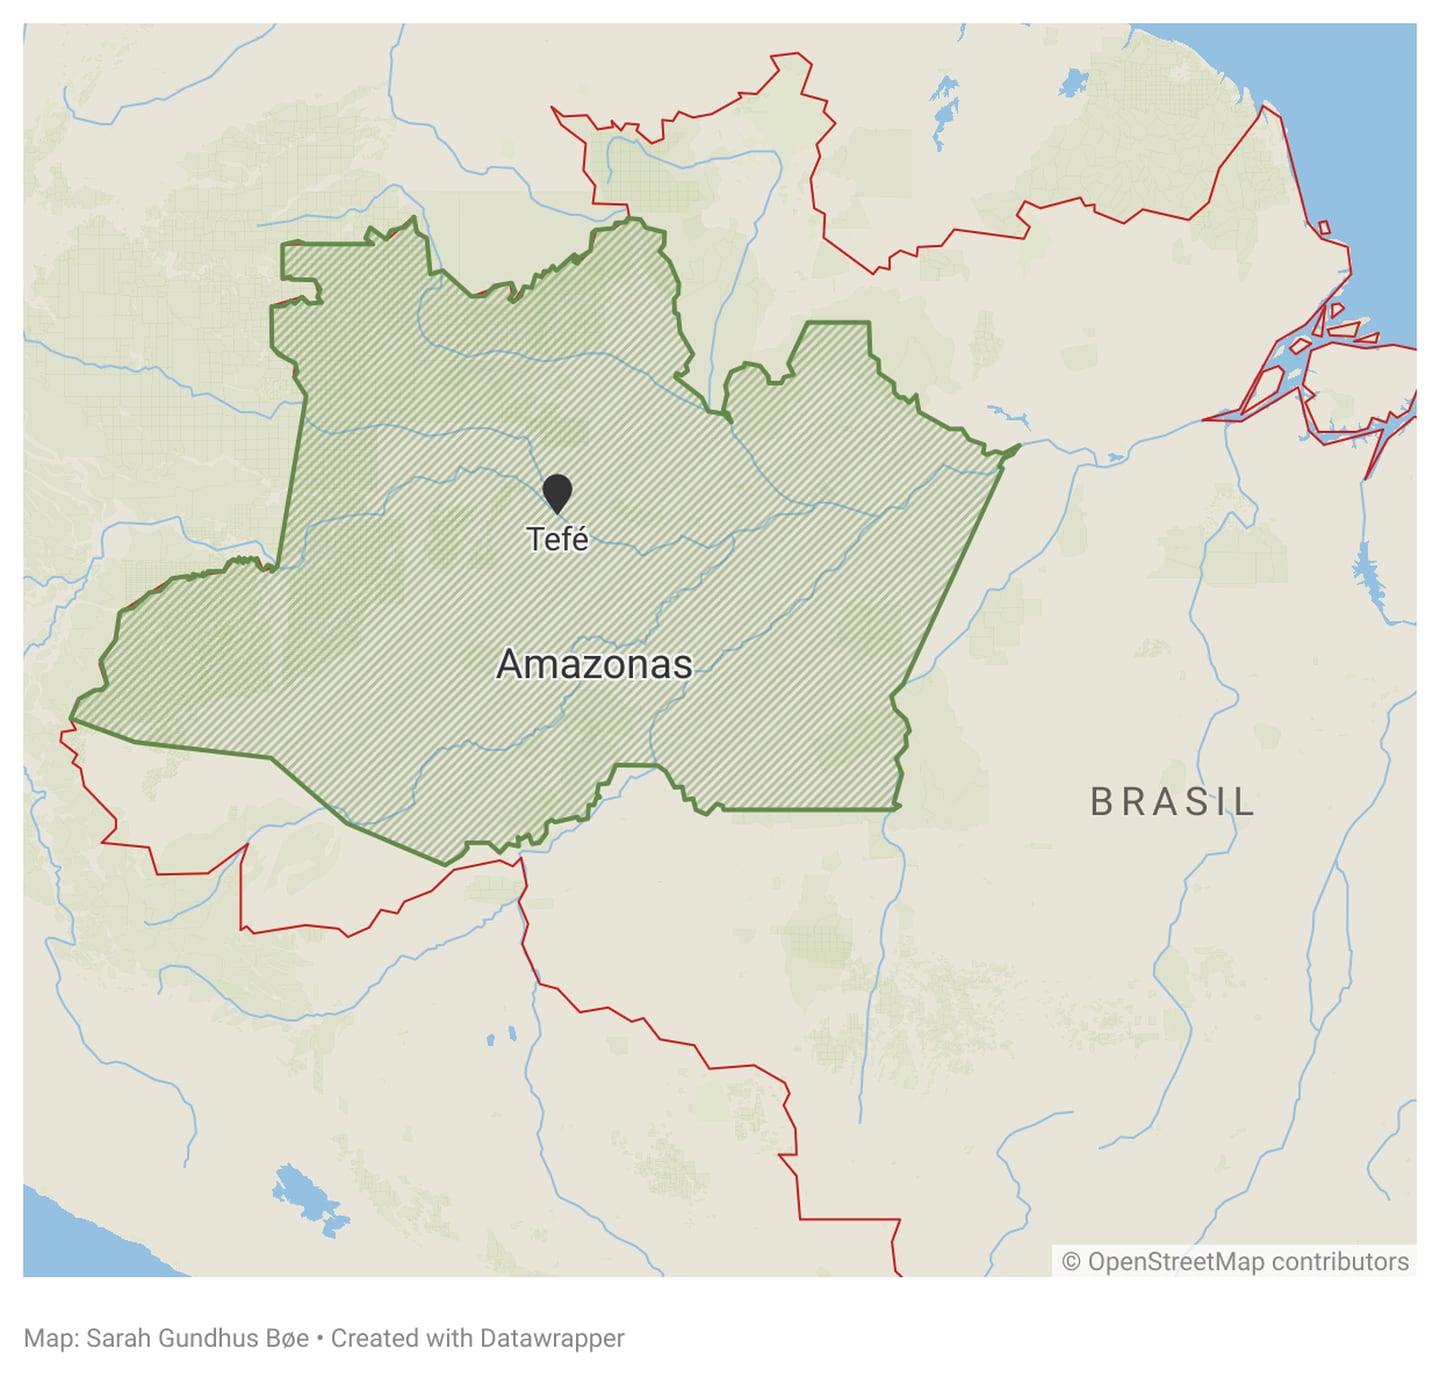 60.000: Byen Tefe, der det bor 60.000 mennesker, ligger ved ved Amazonas-elven. Den ekstreme tørkeperioden området har opplevd fører til store utfordringer for innbyggerne.